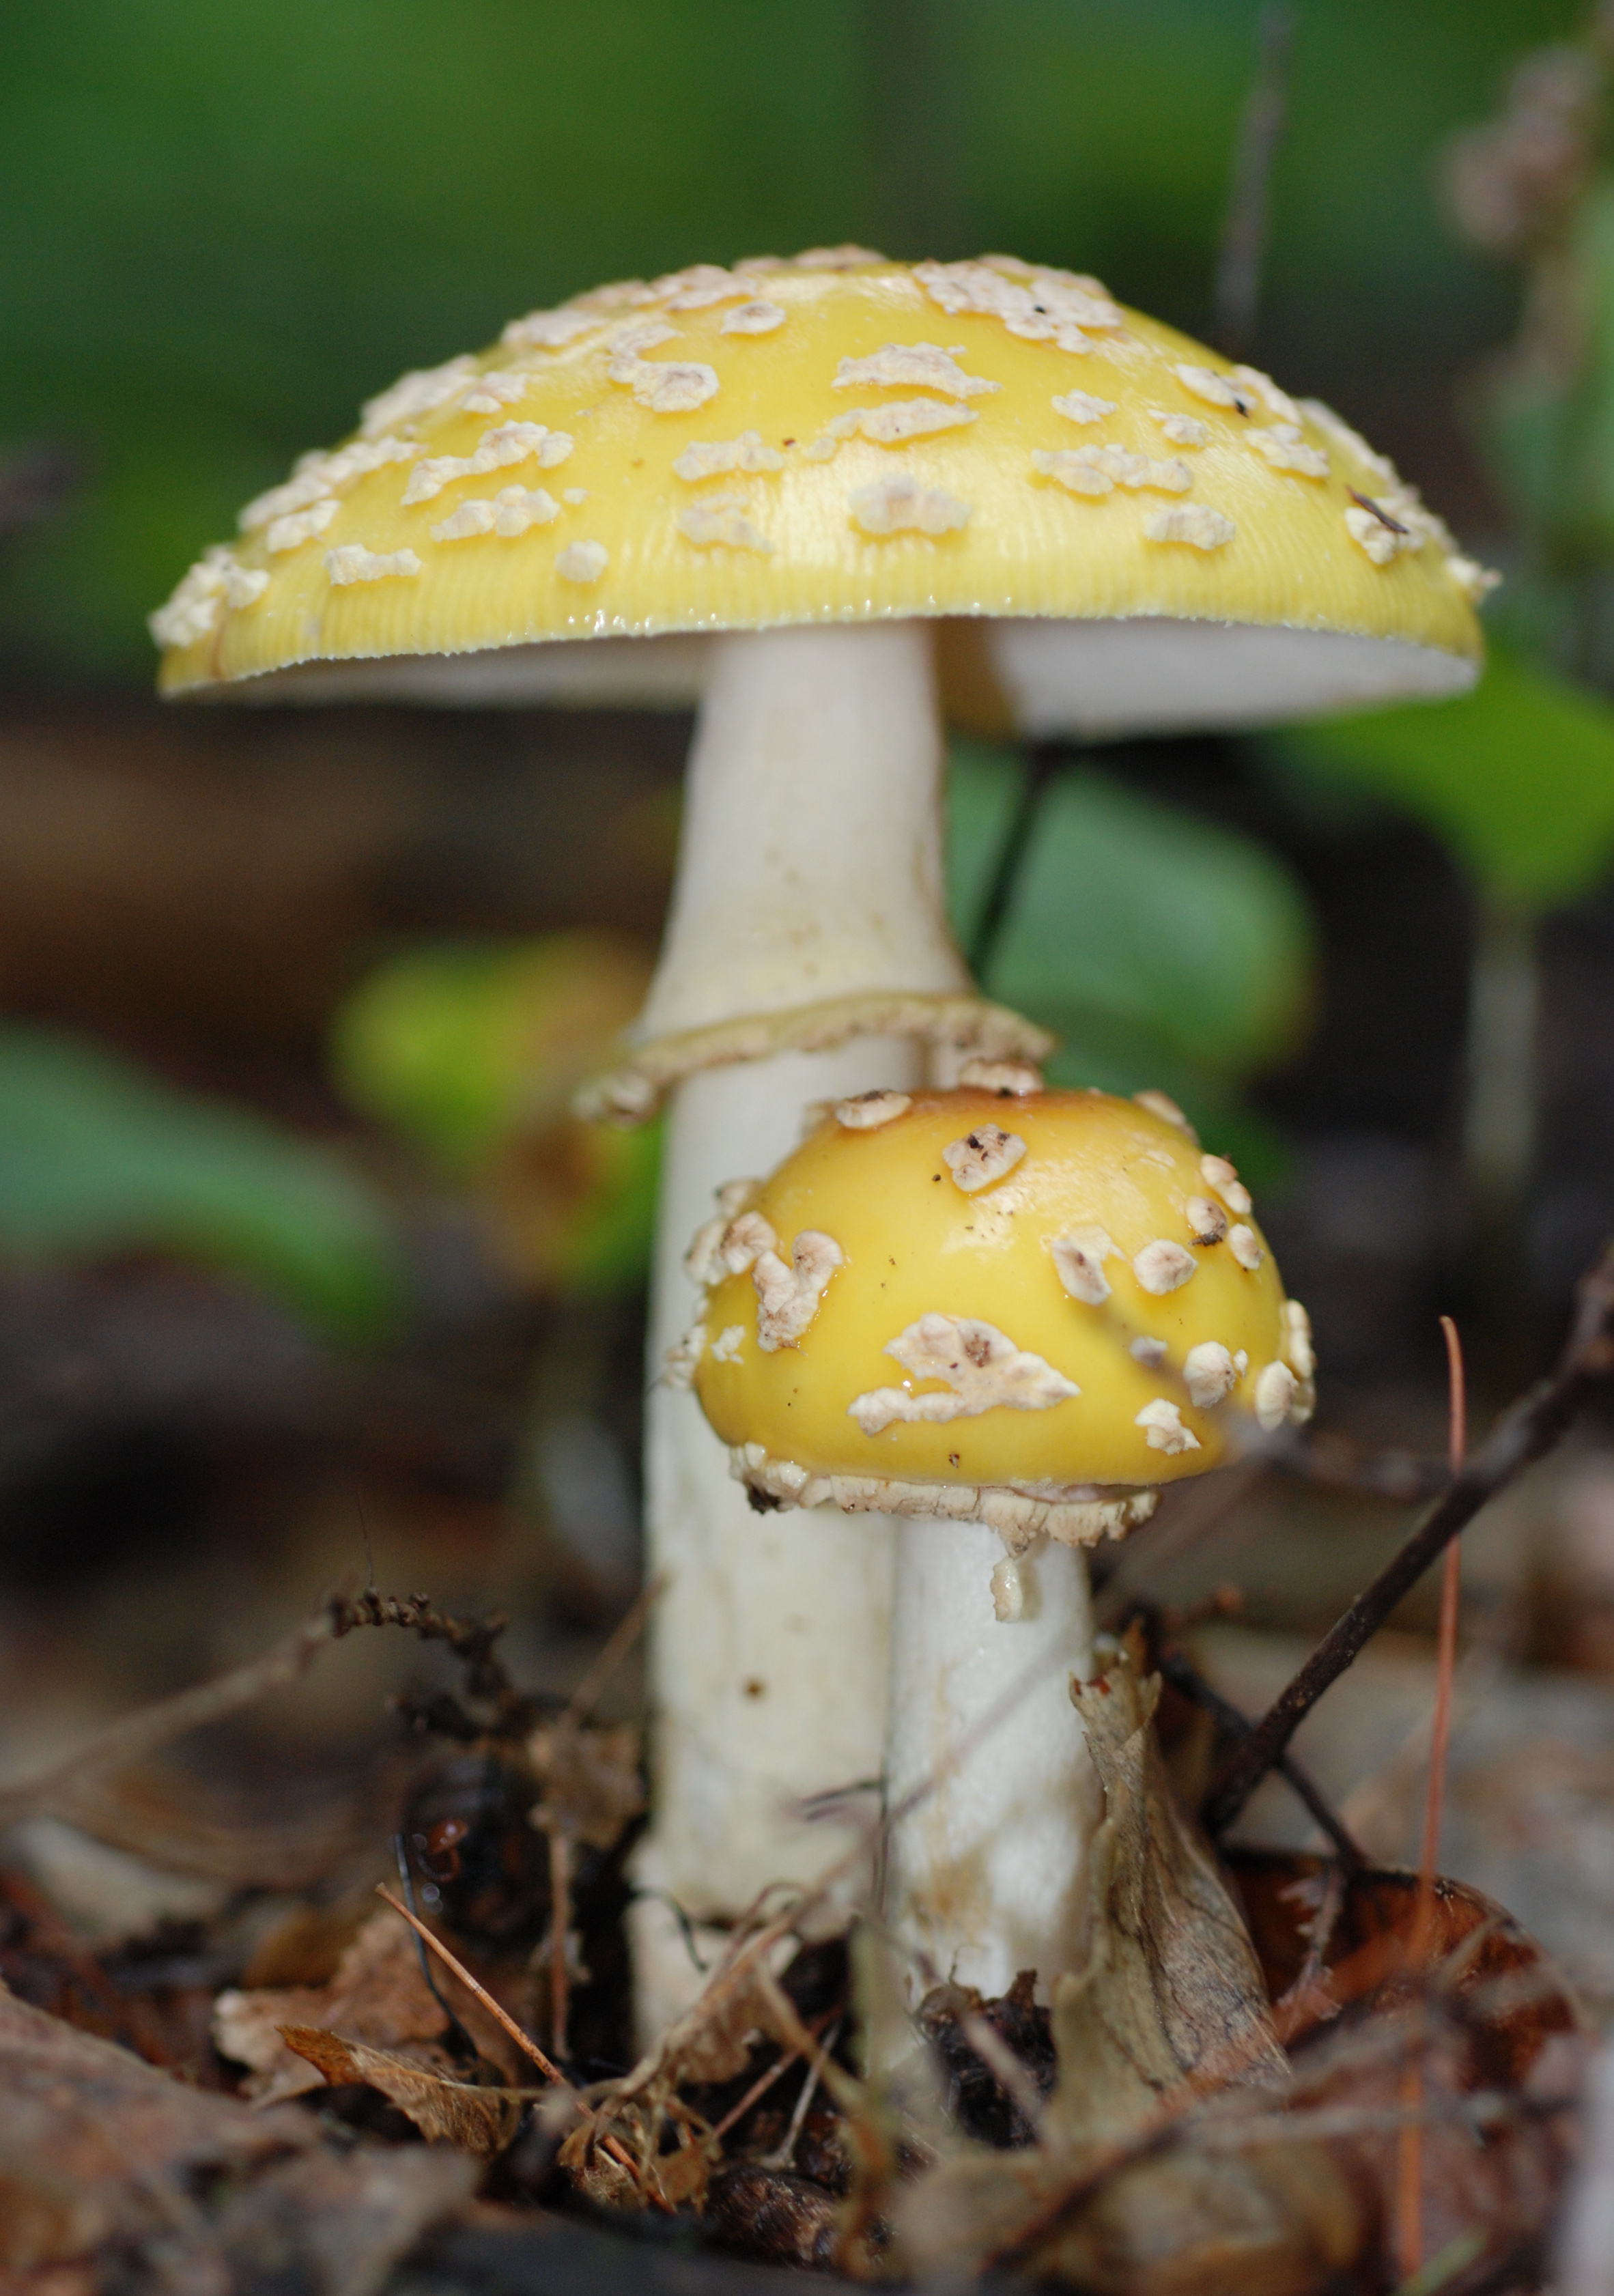 The yellow mushroom photo